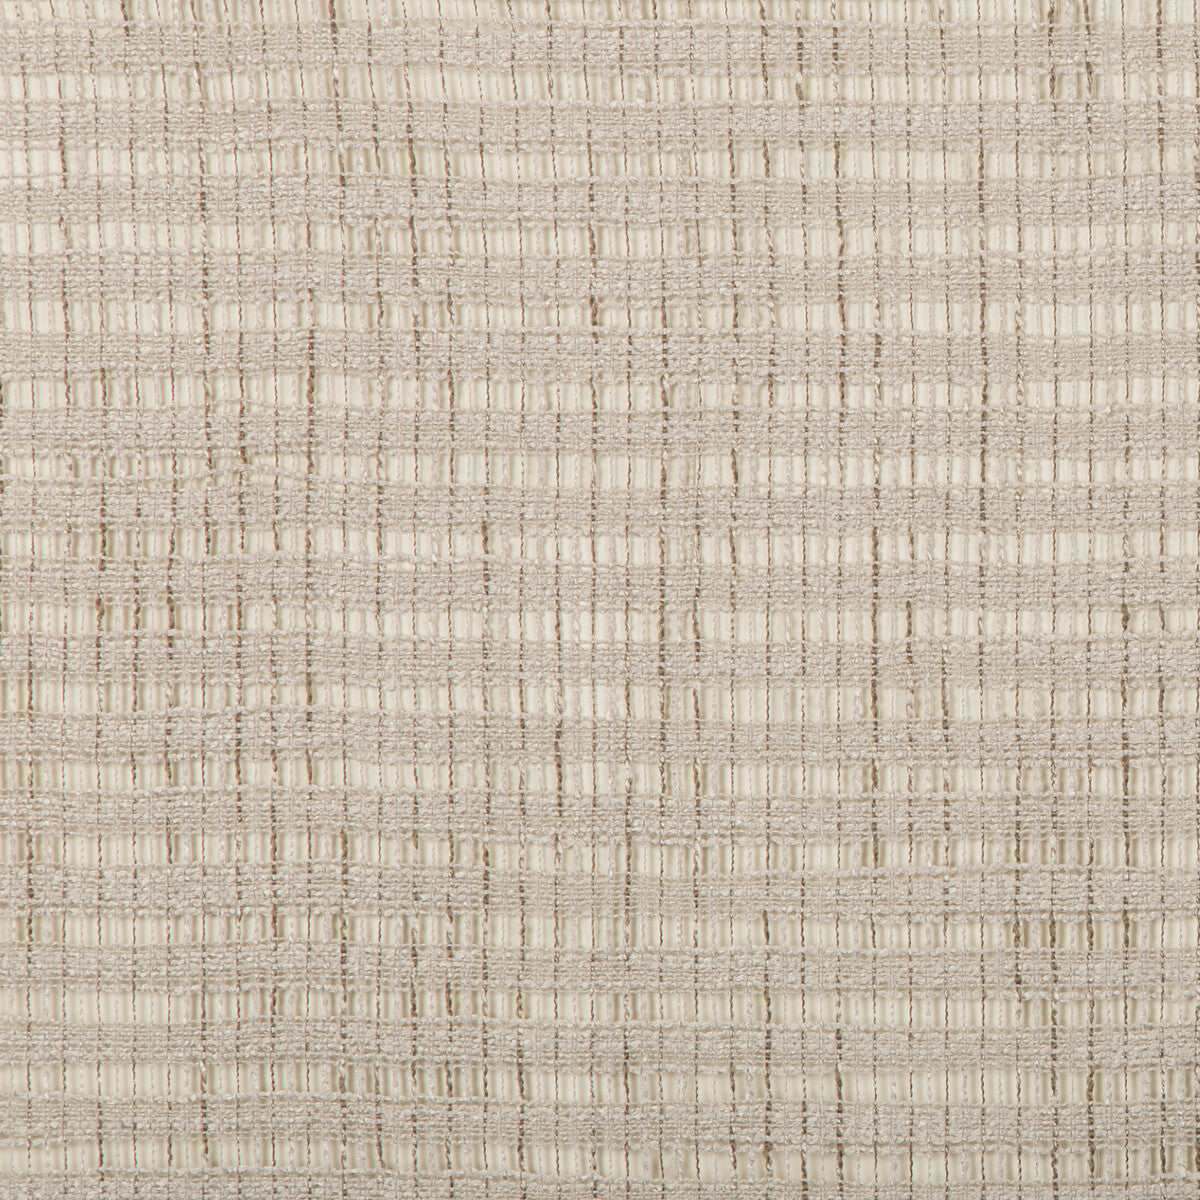 Kravet Basics fabric in 4677-106 color - pattern 4677.106.0 - by Kravet Basics